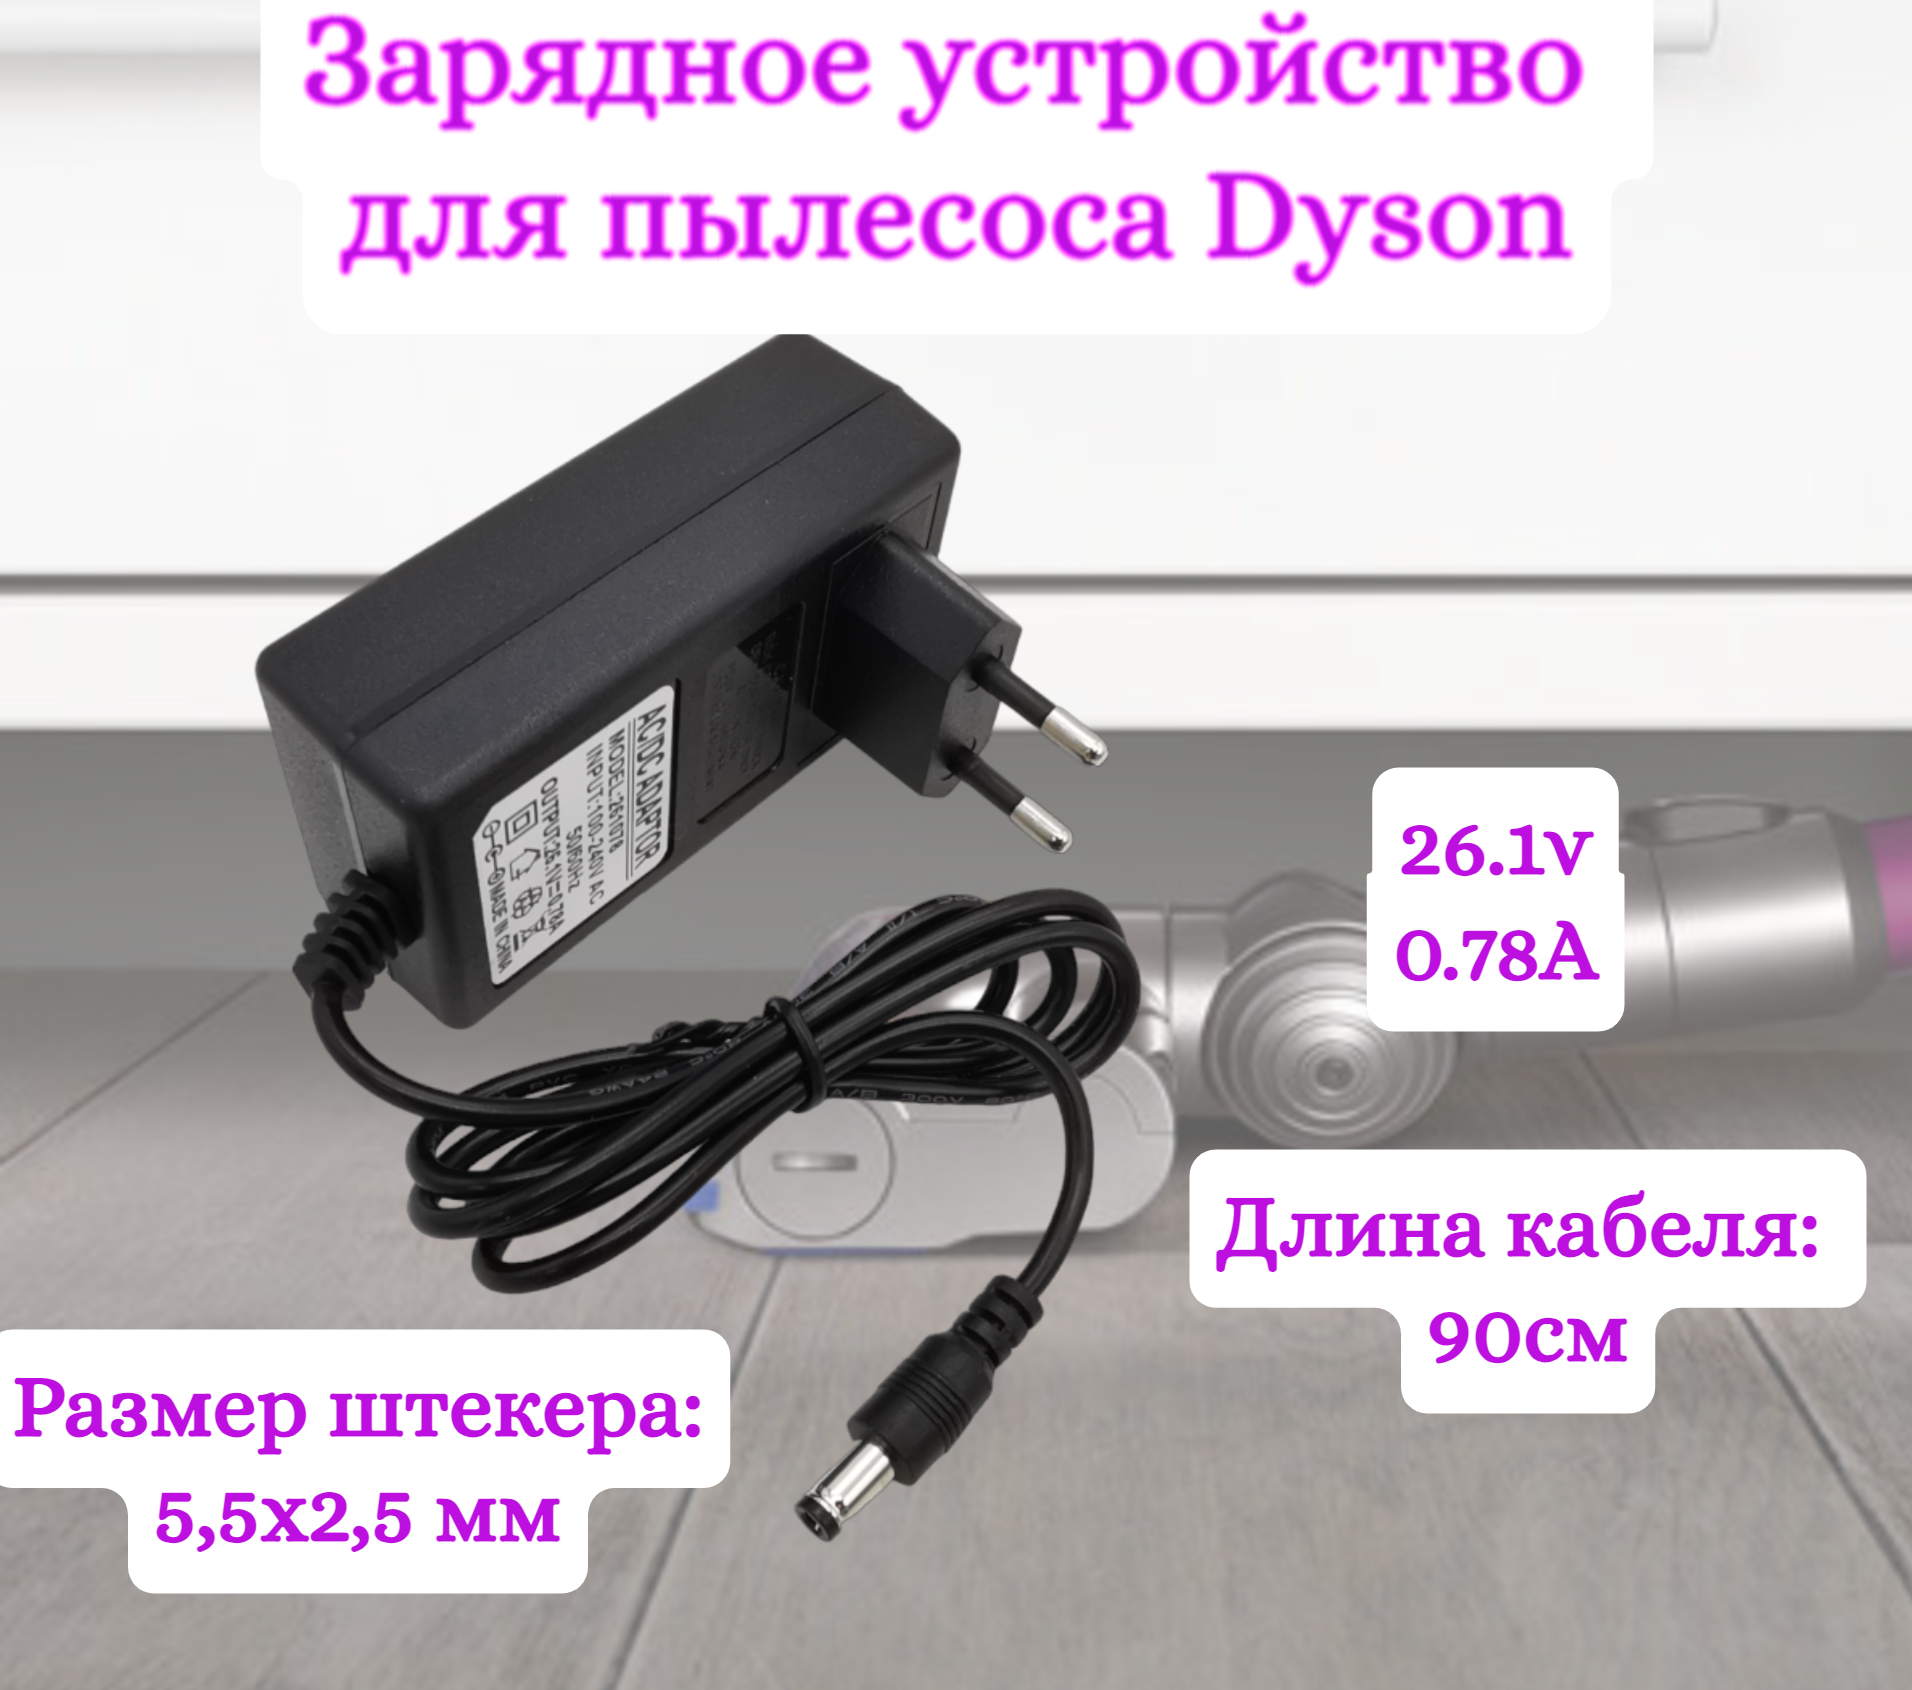 Зарядное устройство для пылесосов Helpico AC-DC 26.1v 0.78A 5.5x2.5mm зарядное устройство helpico 20v 1 2a 5 5x2 1mm